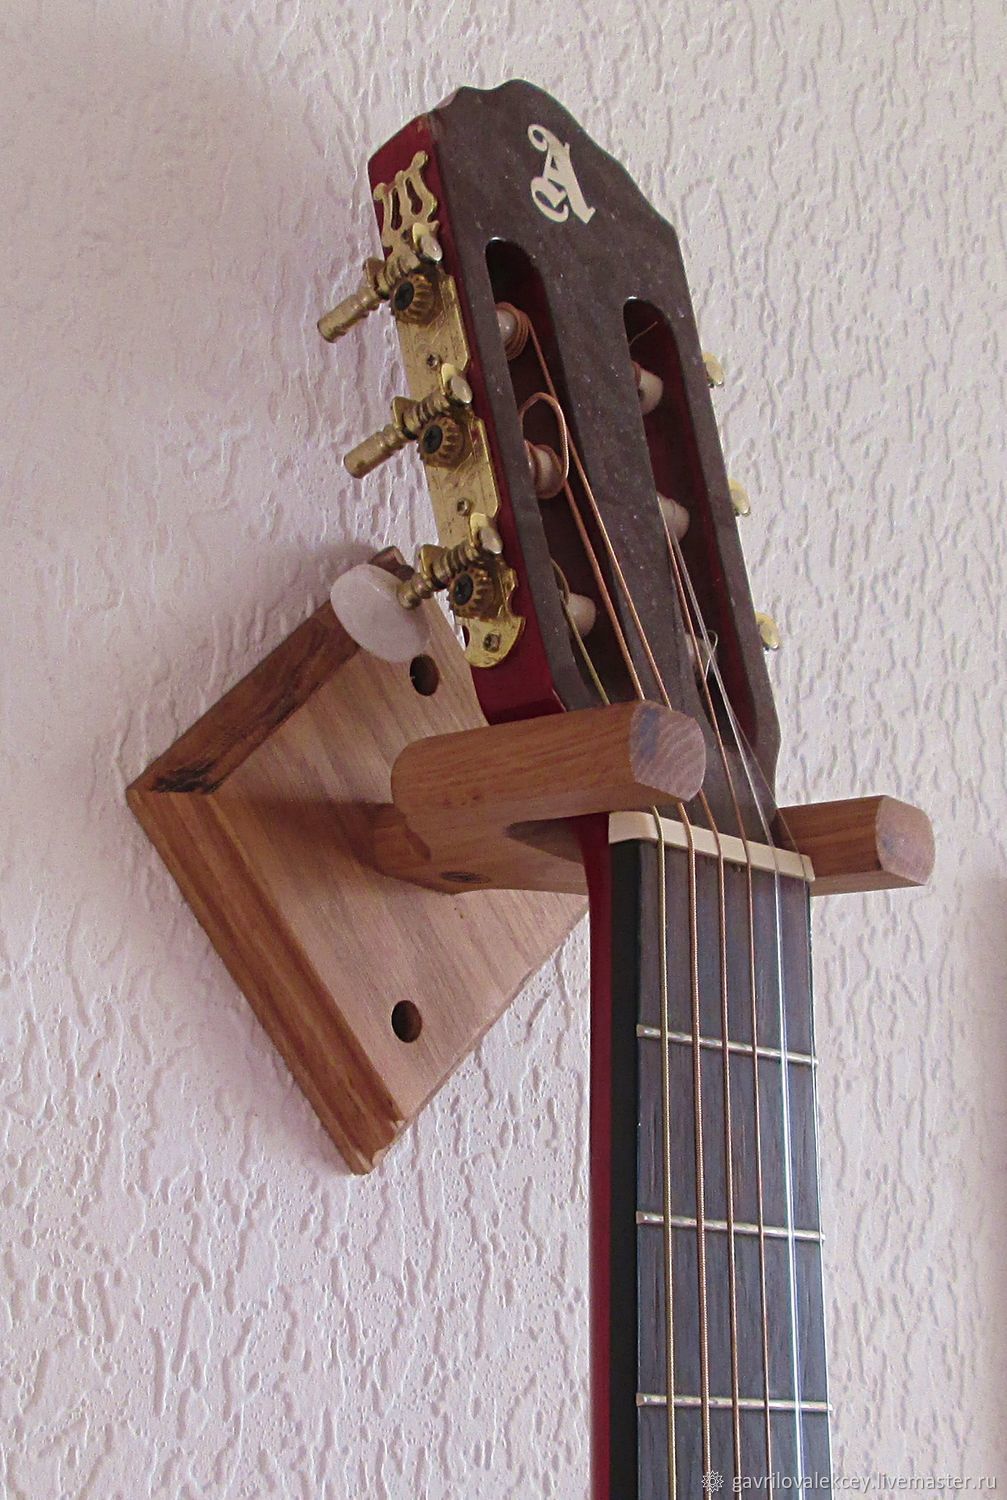  Кронштейн для гитары настенный, Кронштейны и крепления, Королев,  Фото №1